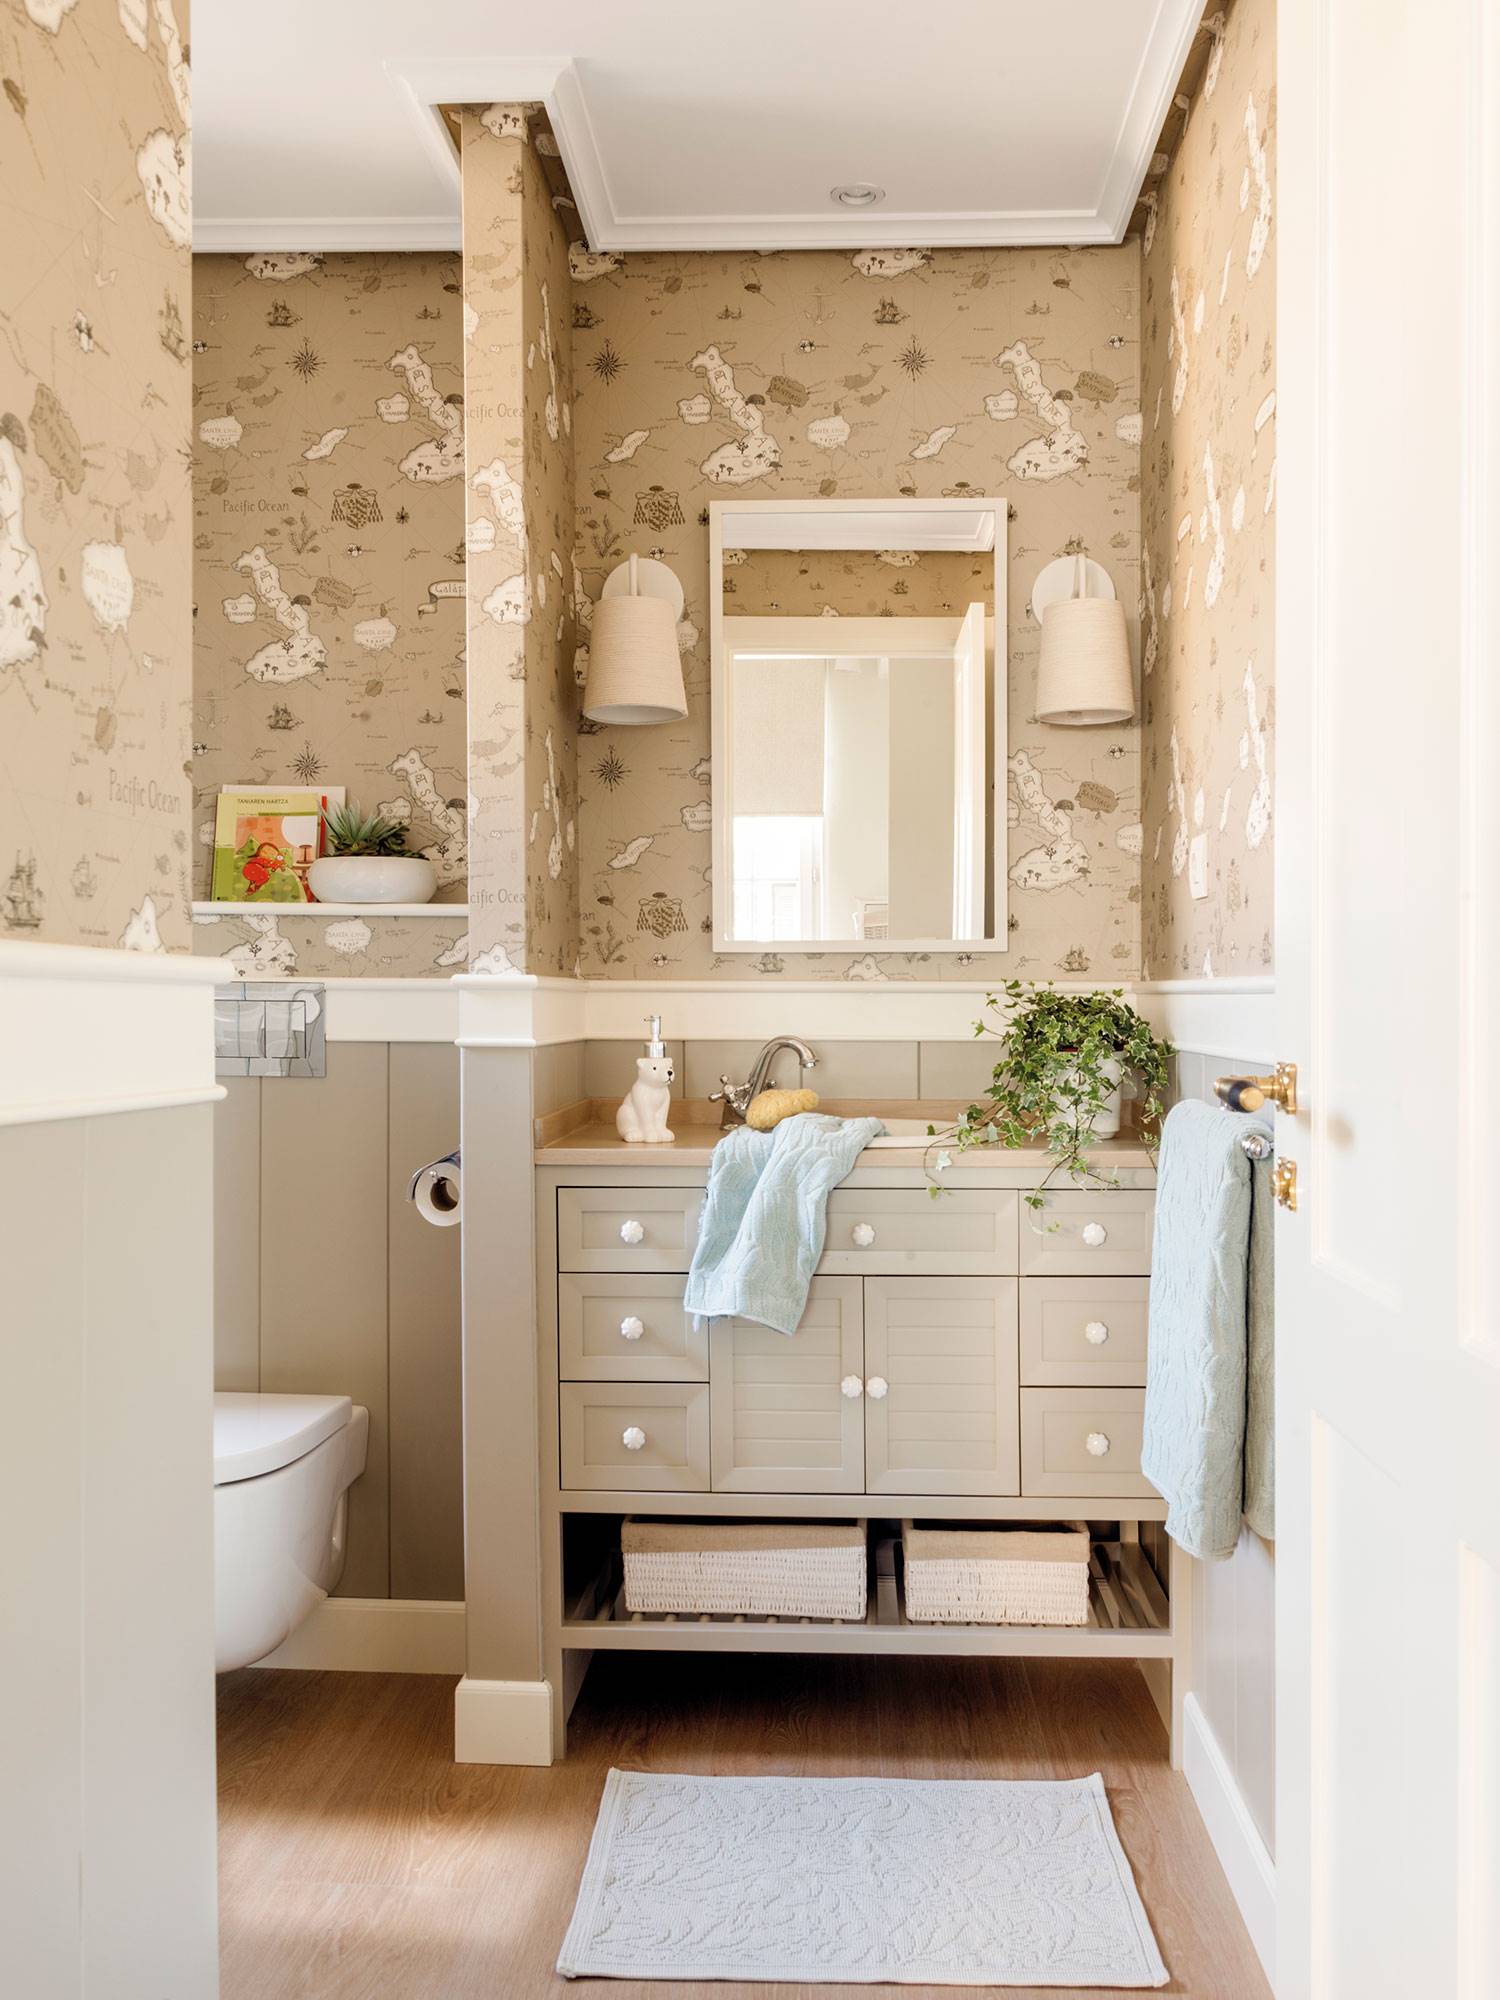 Baño con mueble de color beige, papel pintado y murete que separa la zona del inodoro. 